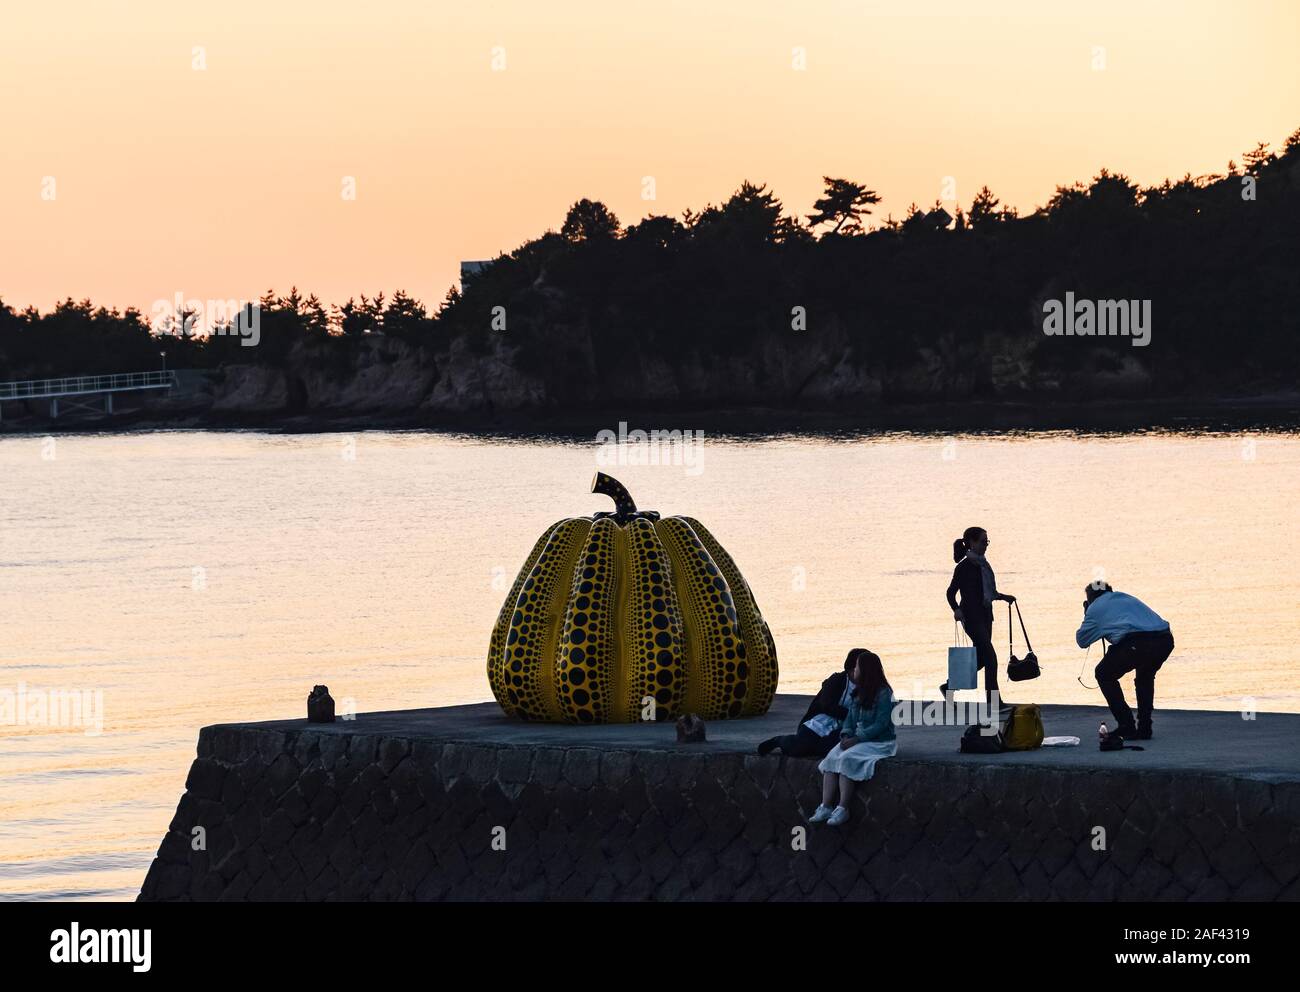 Tourists taking photos with Yayoi Kusama's giant yellow pumpkin sculpture at sunset in Naoshima, Japan. Stock Photo